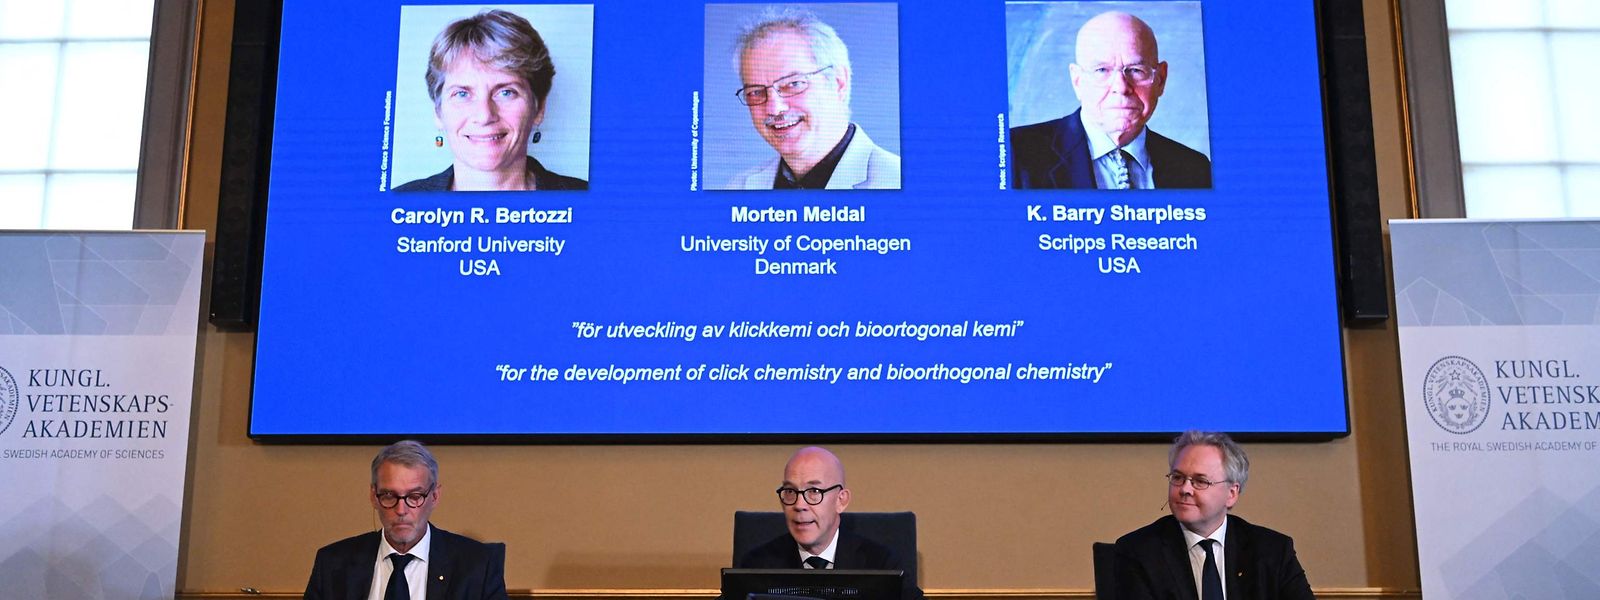 Les lauréats du prix Nobel de chimie 2022 ont été dévoilés ce mercredi matin. 